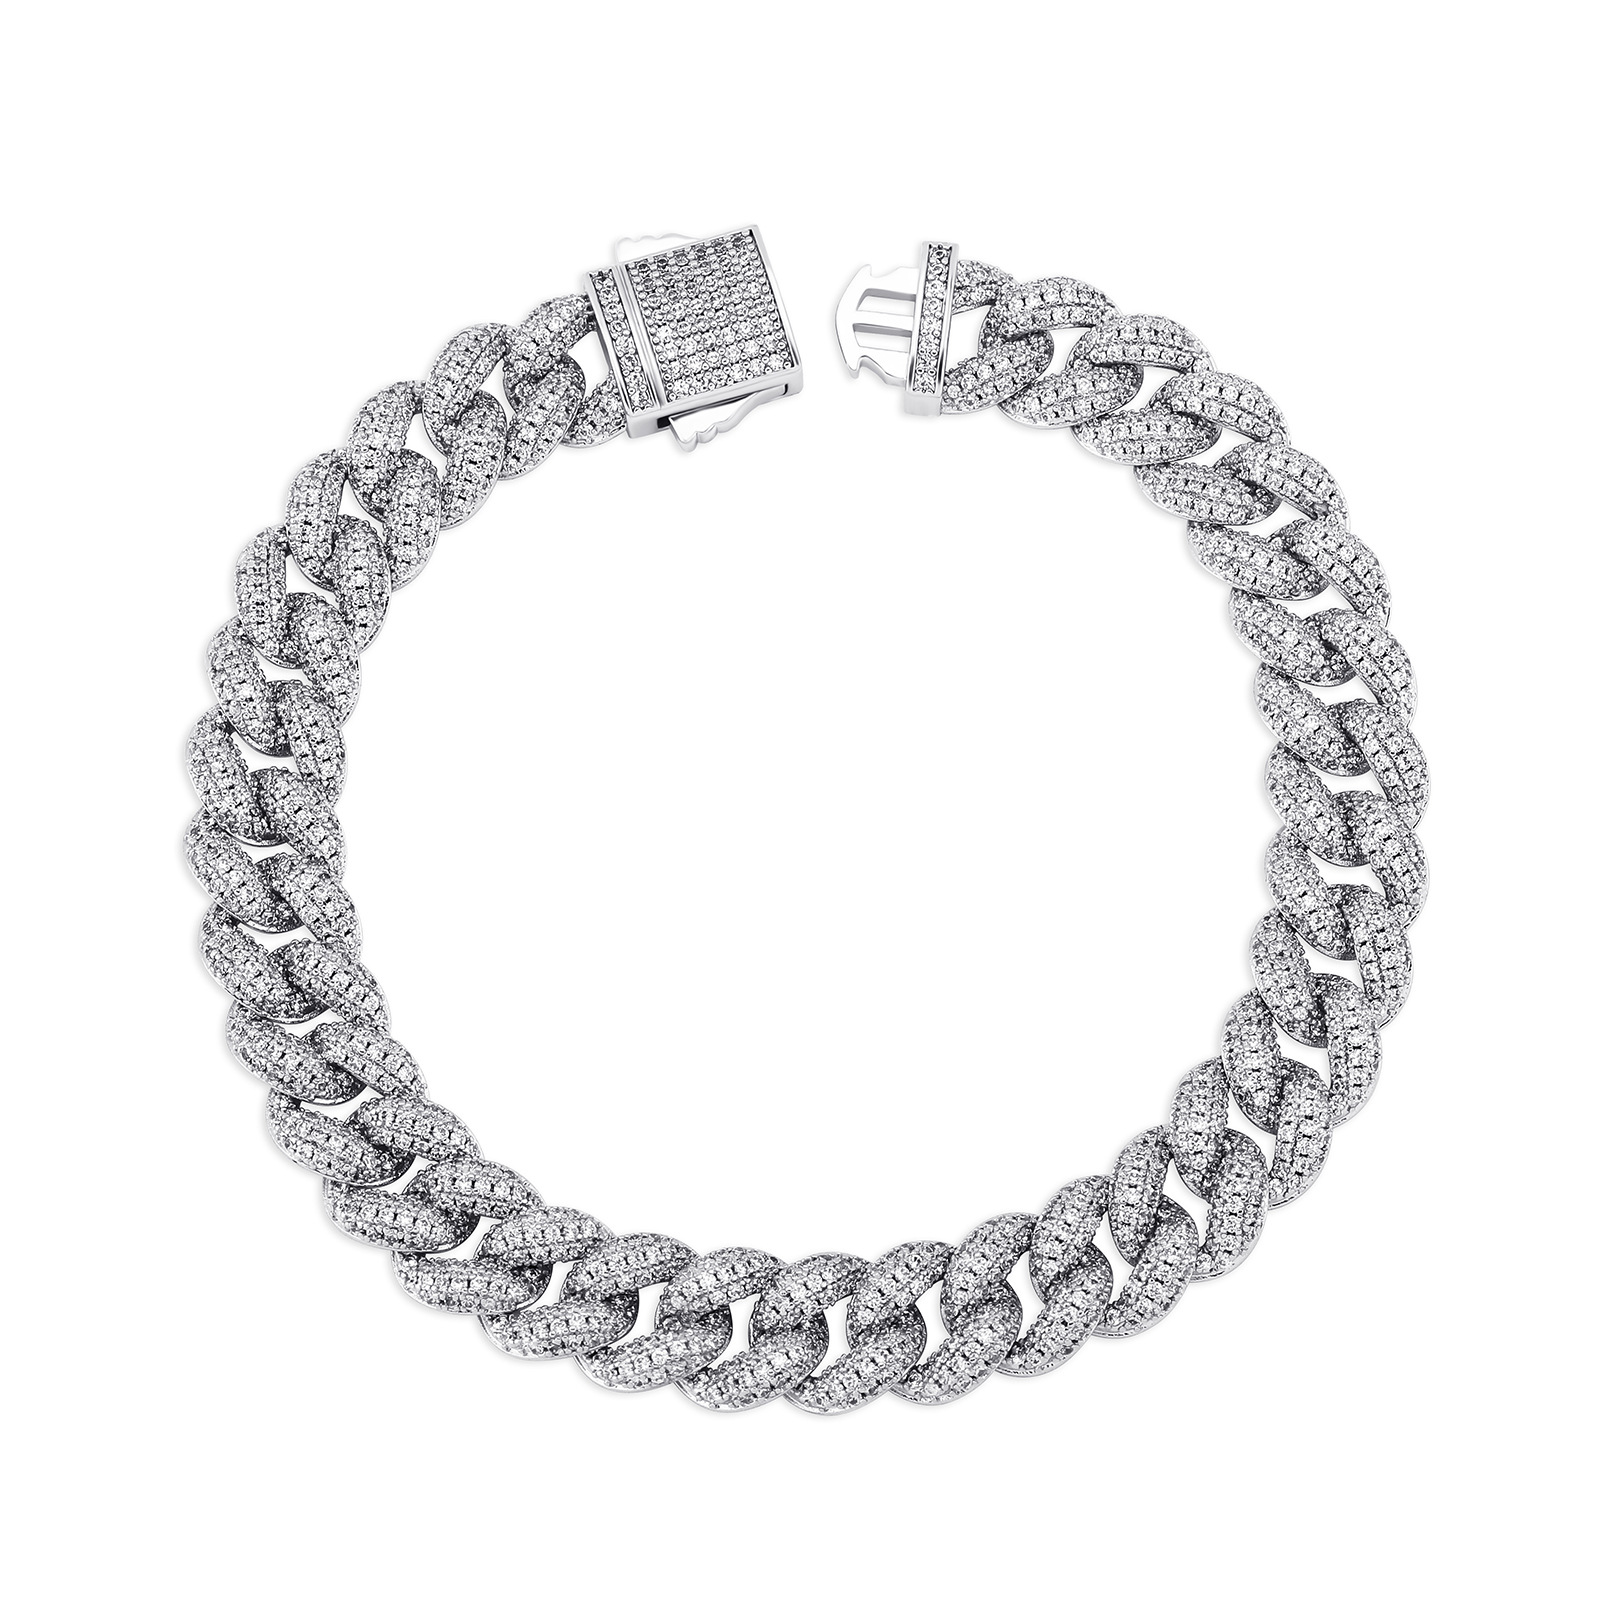 Bracelet silver 7 inch